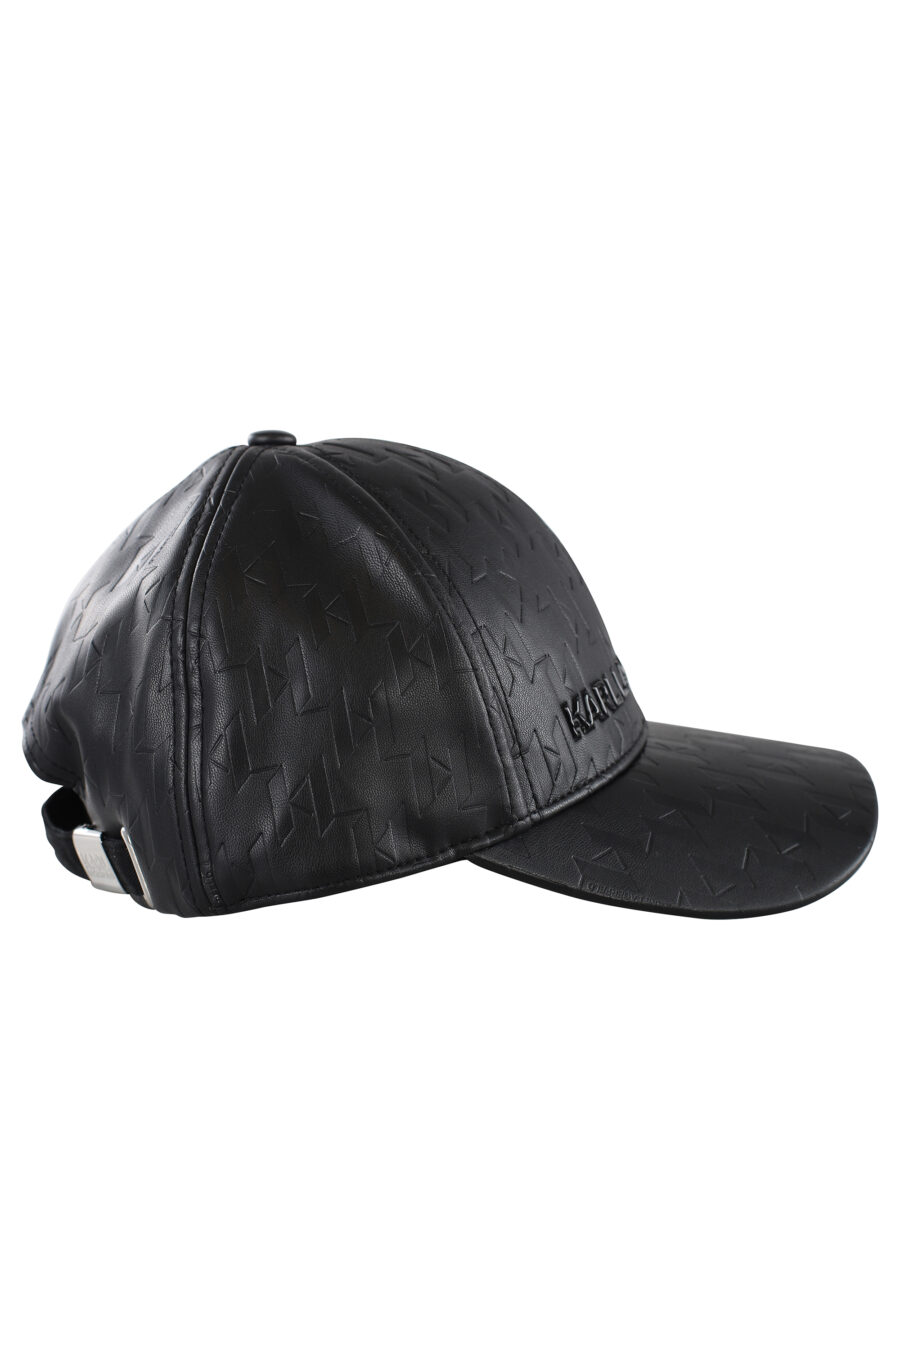 Gorra negra de cuero con logo monocromático - IMG 7065